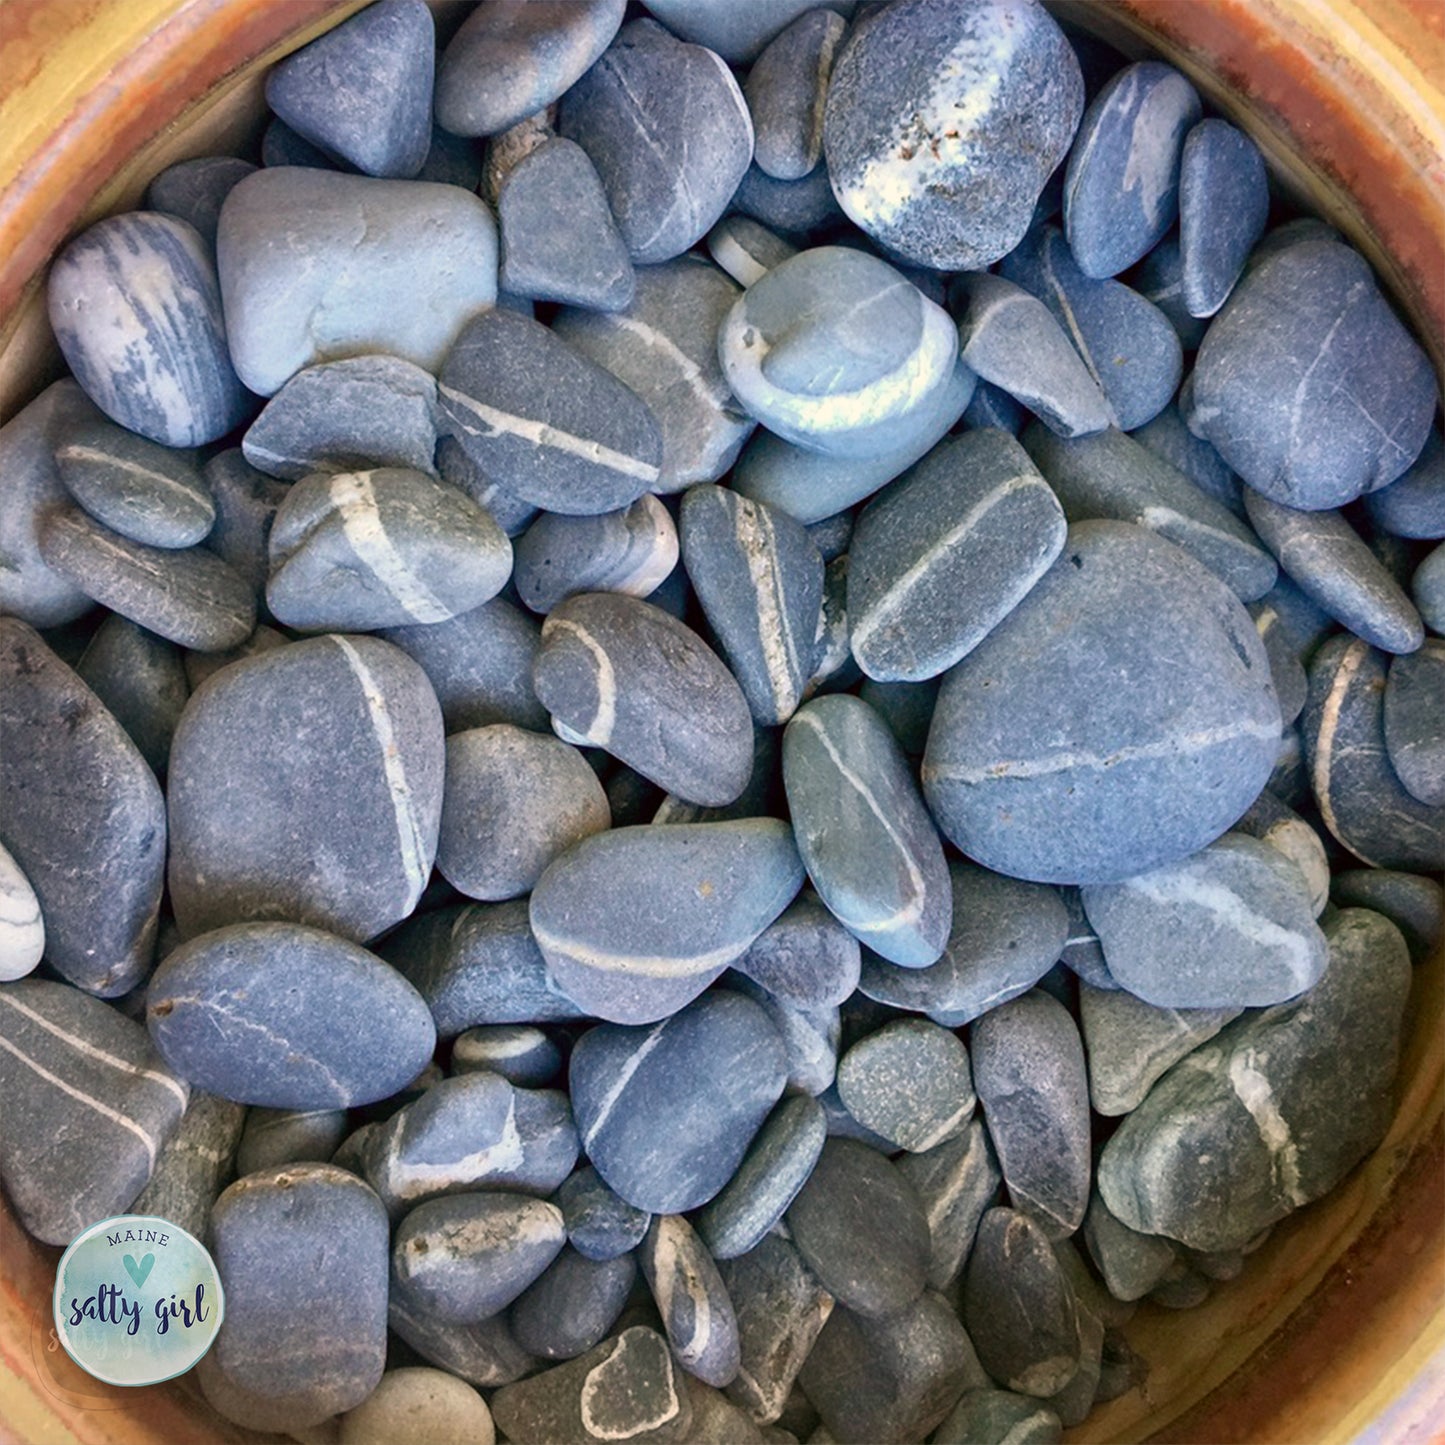 Wishing Stones 1.25-1.75 inch - Maine Wishing Rocks with White Ring